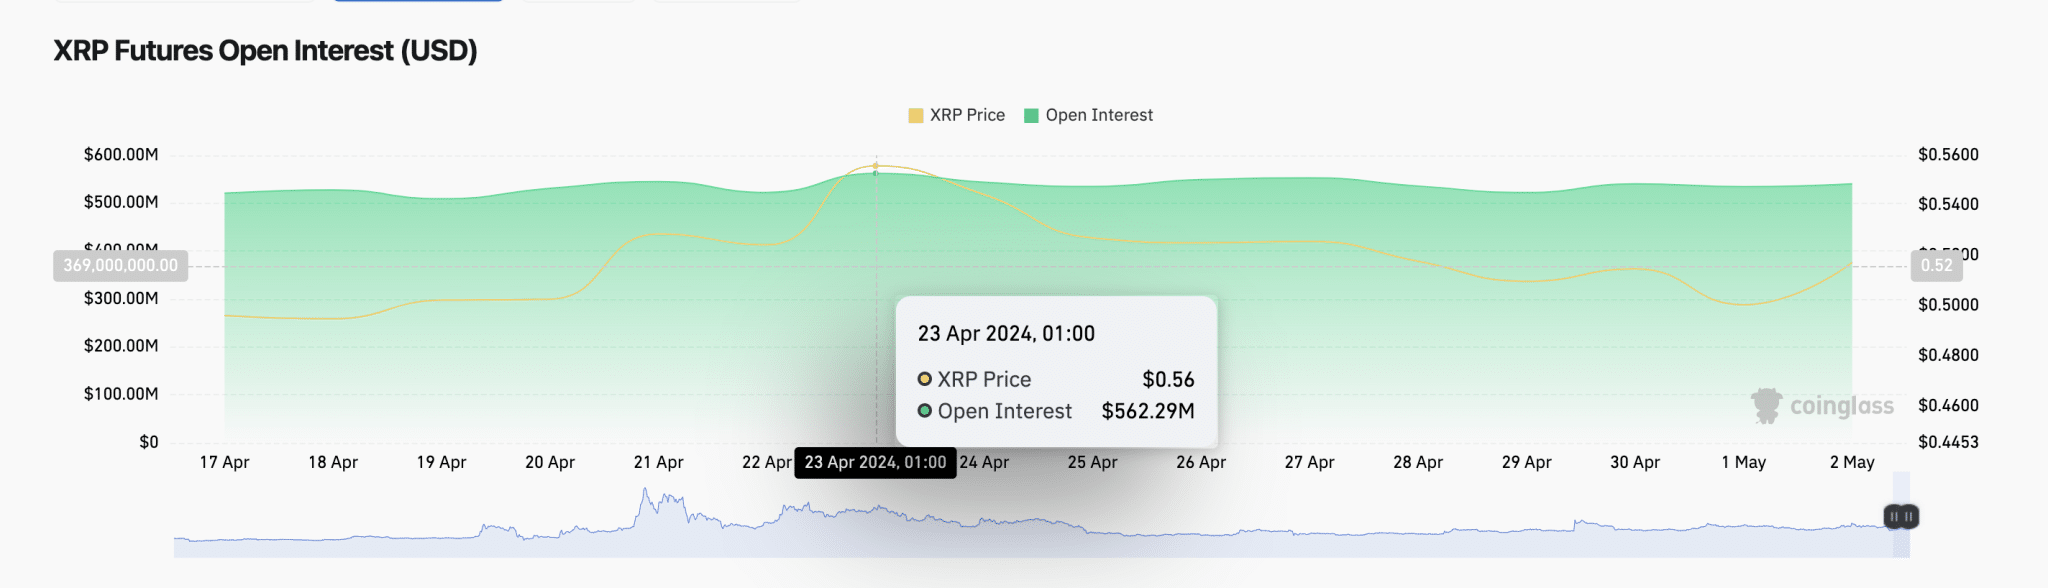 Цена XRP превосходит криптовалютные рынки, поскольку открытый интерес держится на уровне 540 миллионов долларов